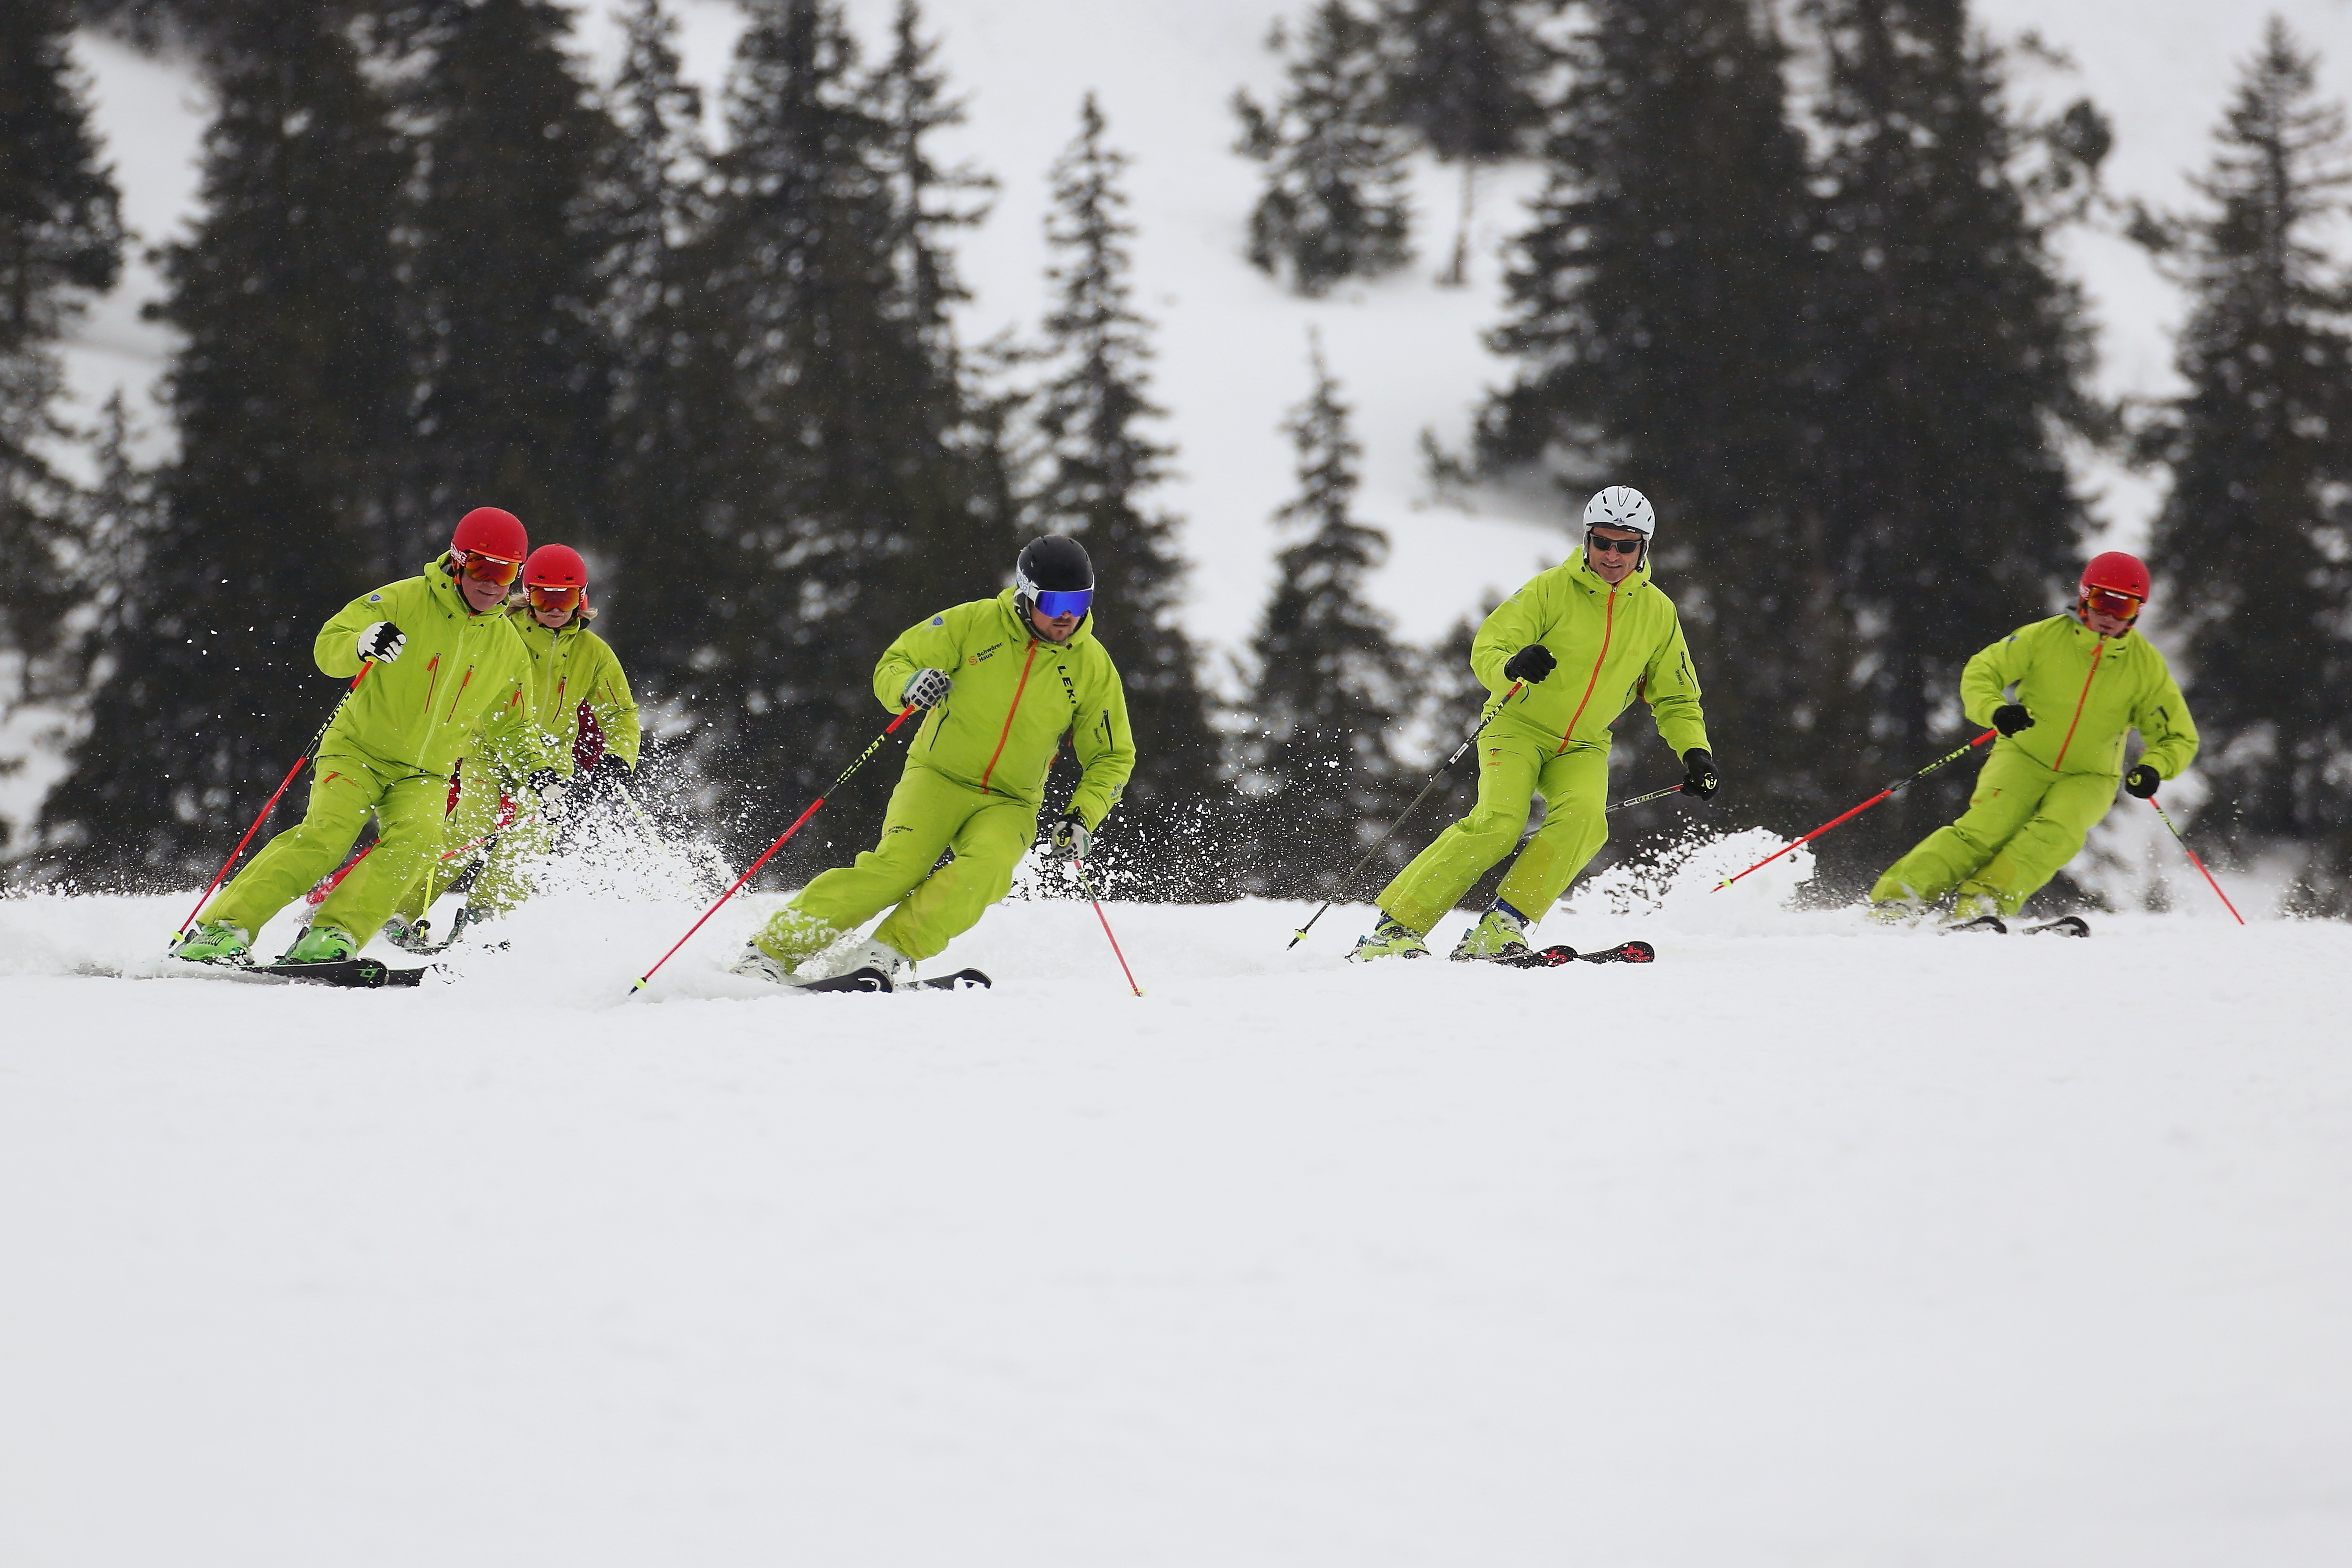 Fünf Personen fahren Ski, aufgestellt in einer Formation